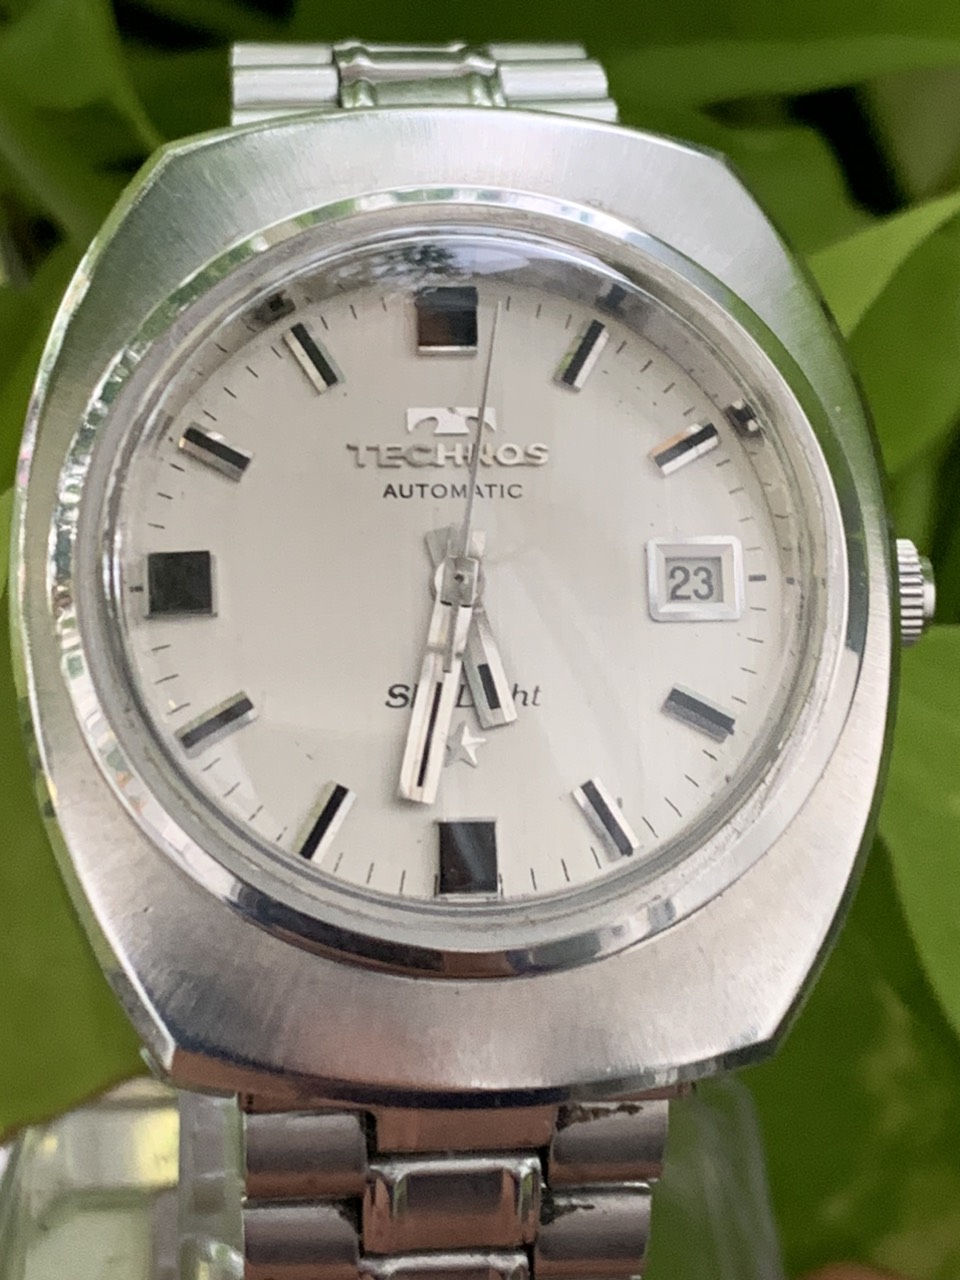 Đồng hồ nam Technos Automatic mặt màu trắng 1 lịch của Thuỵ